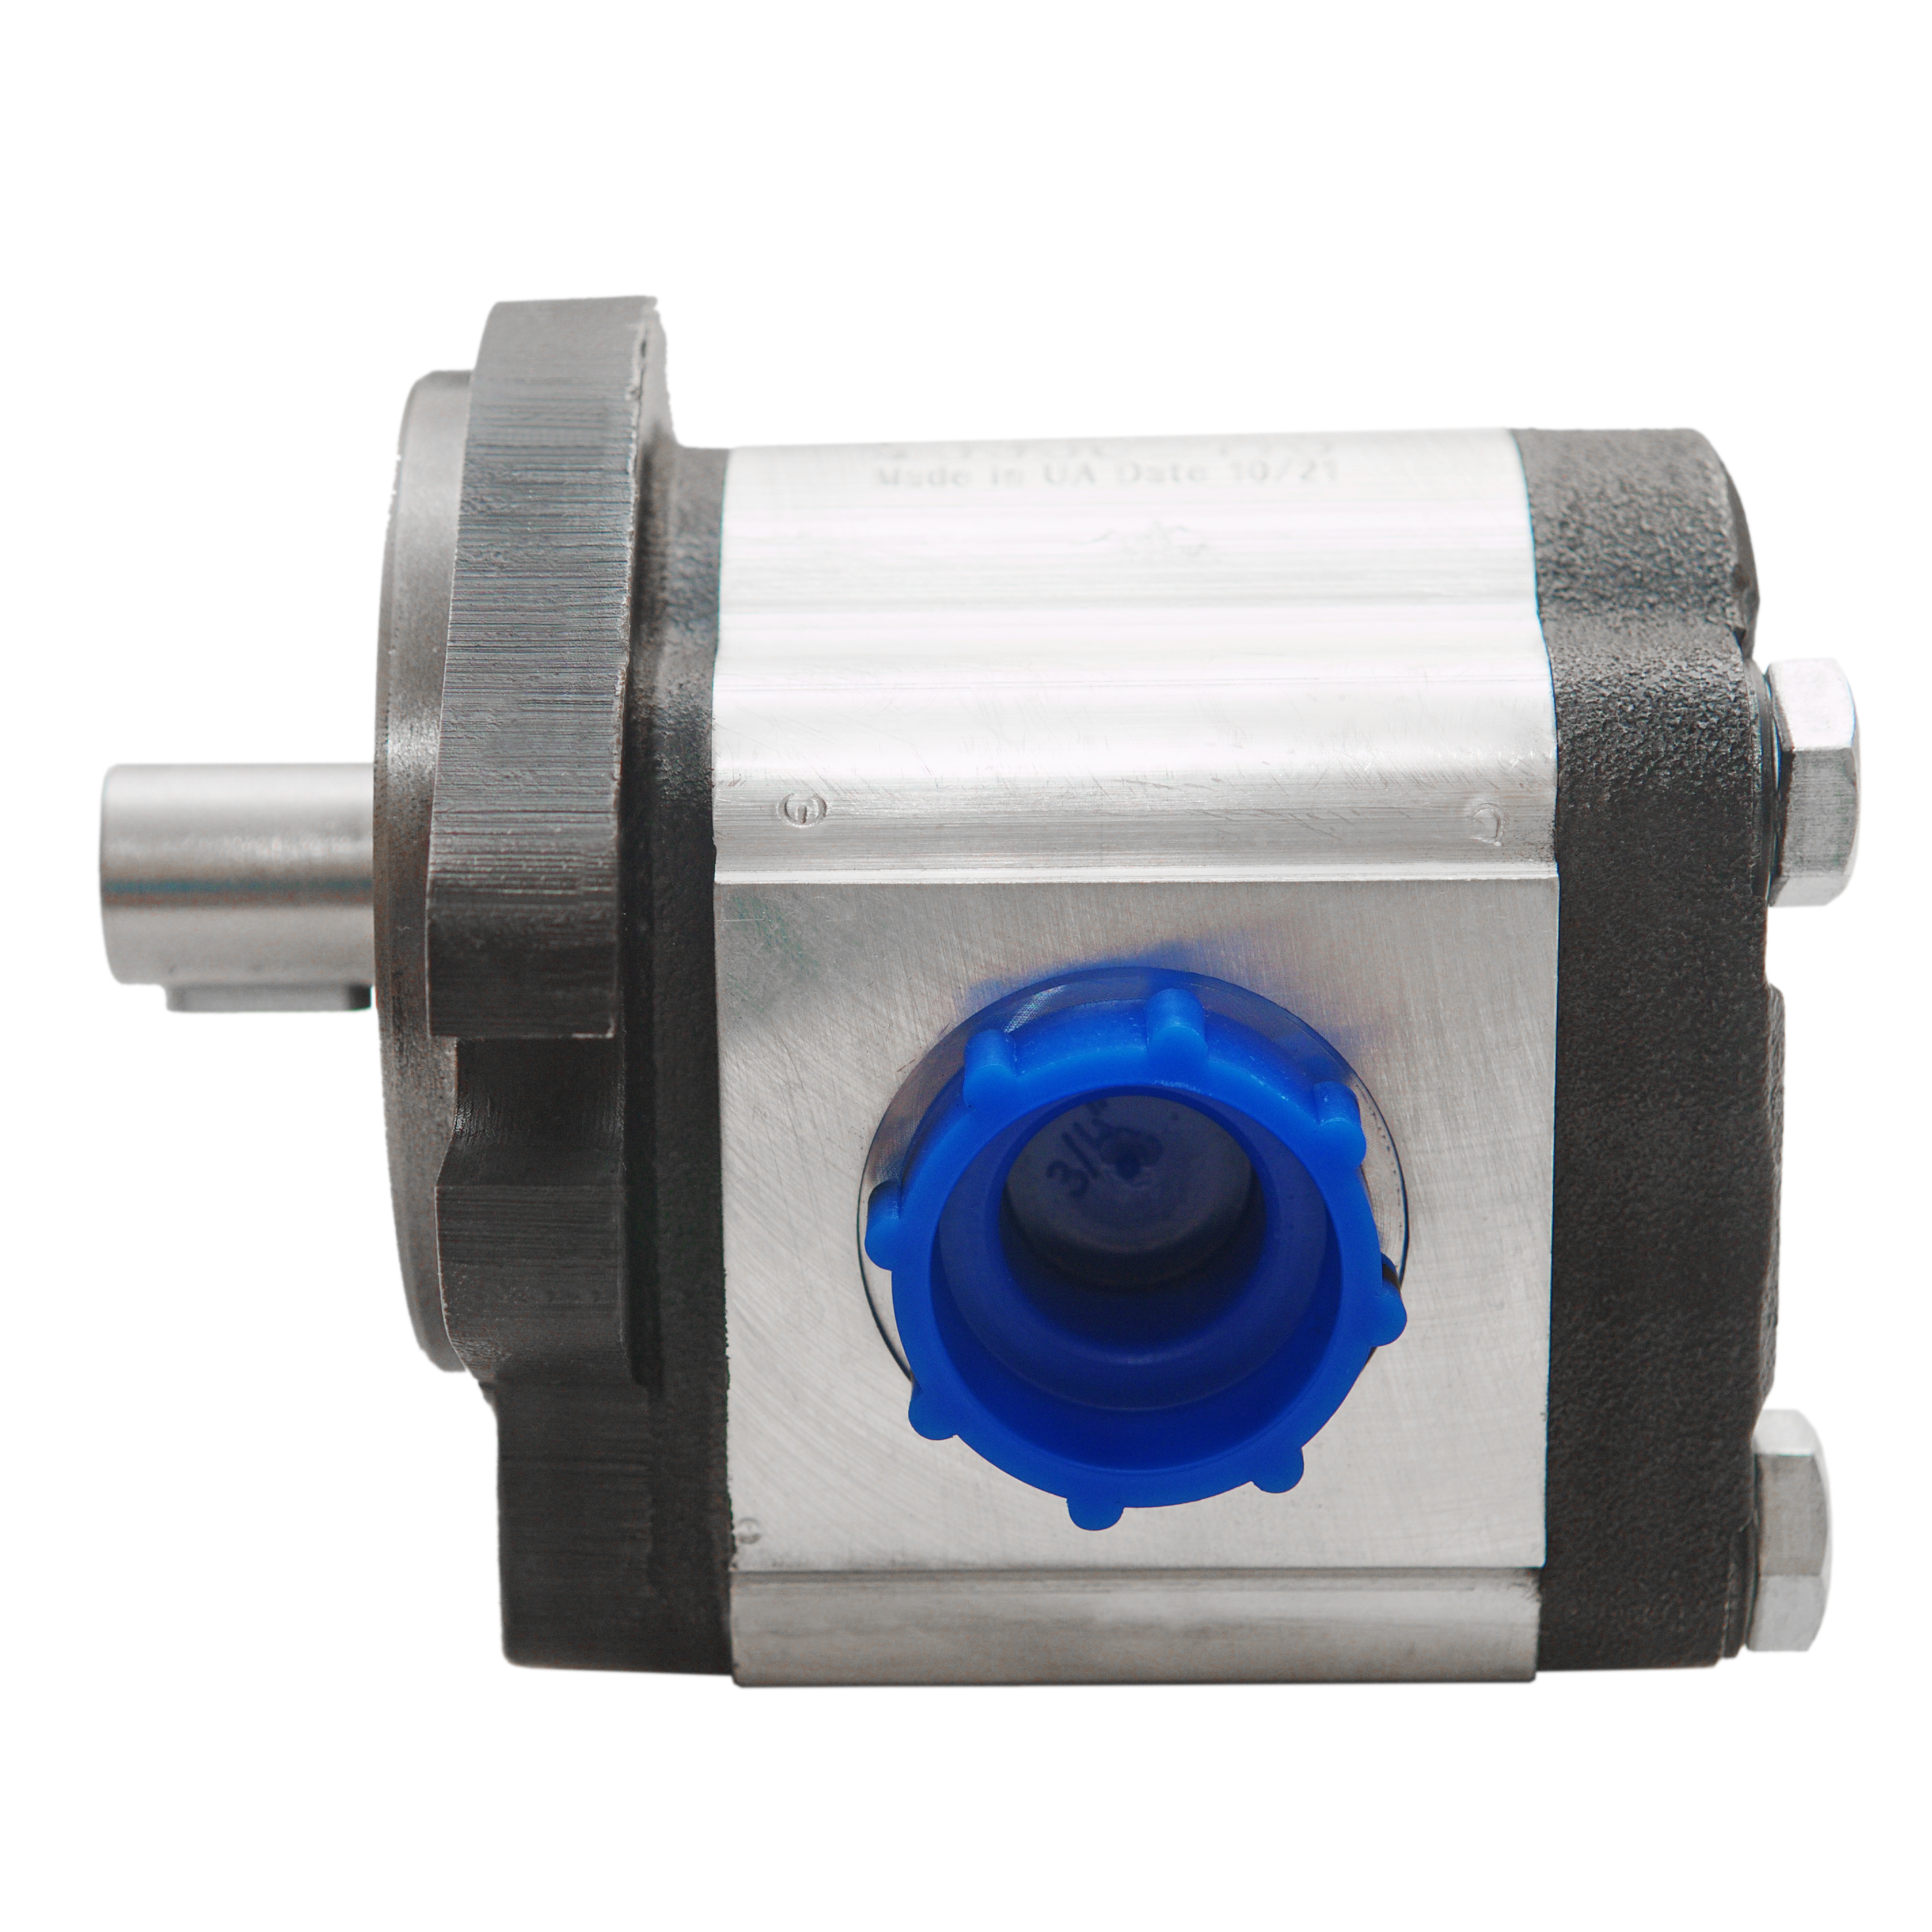 0.38 CID hydraulic gear pump, 3/4 keyed shaft clockwise gear pump | Magister Hydraulics